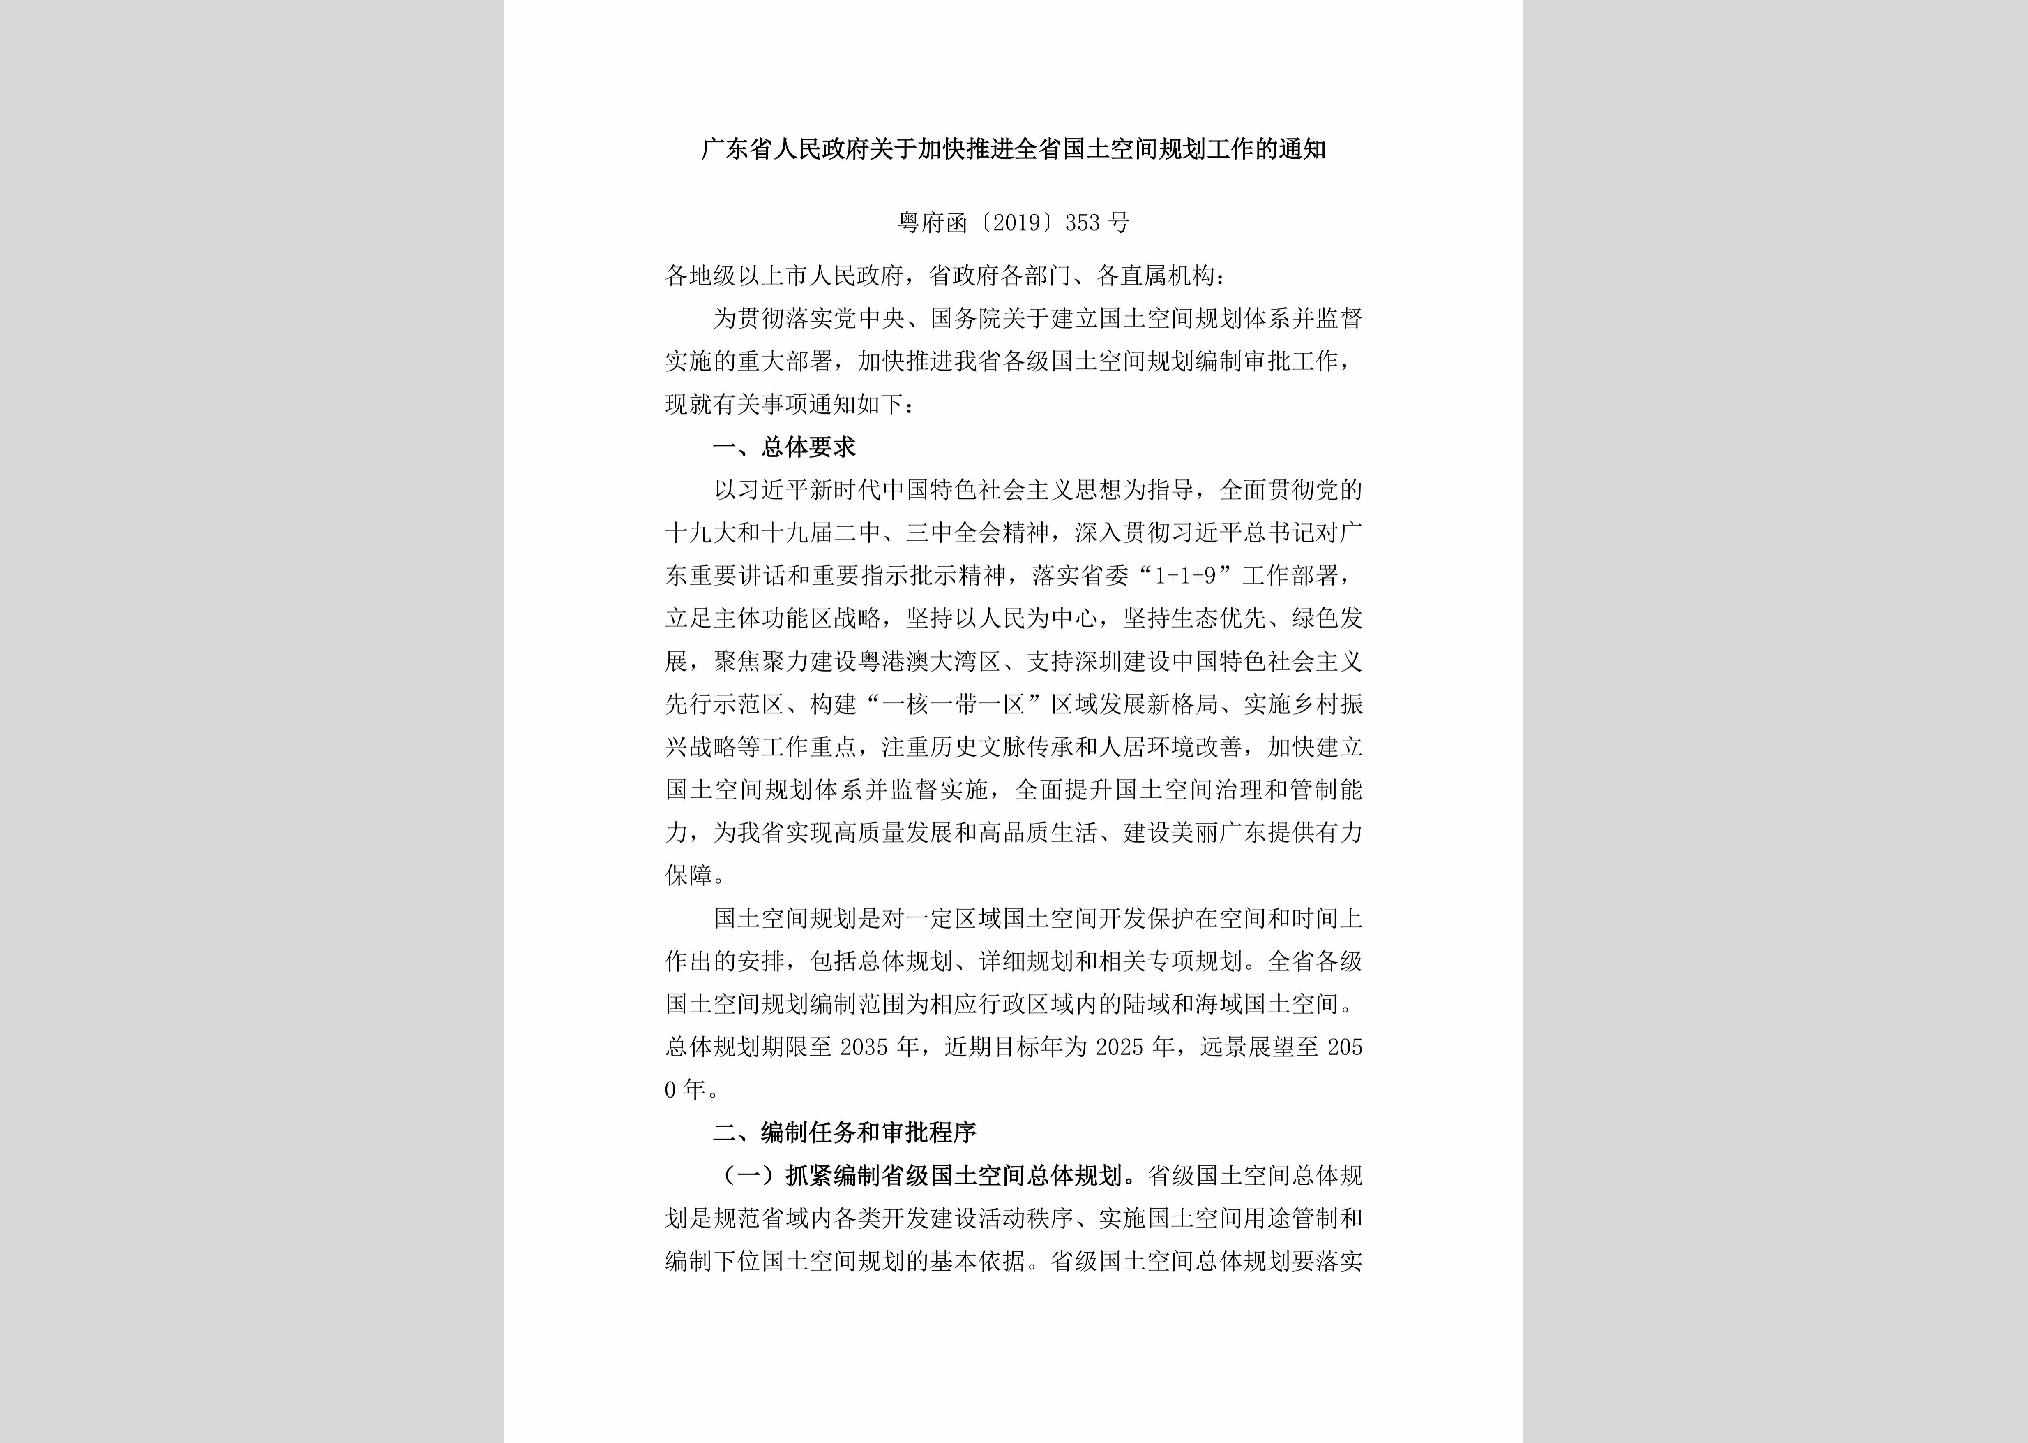 粤府函[2019]353号：广东省人民政府关于加快推进全省国土空间规划工作的通知